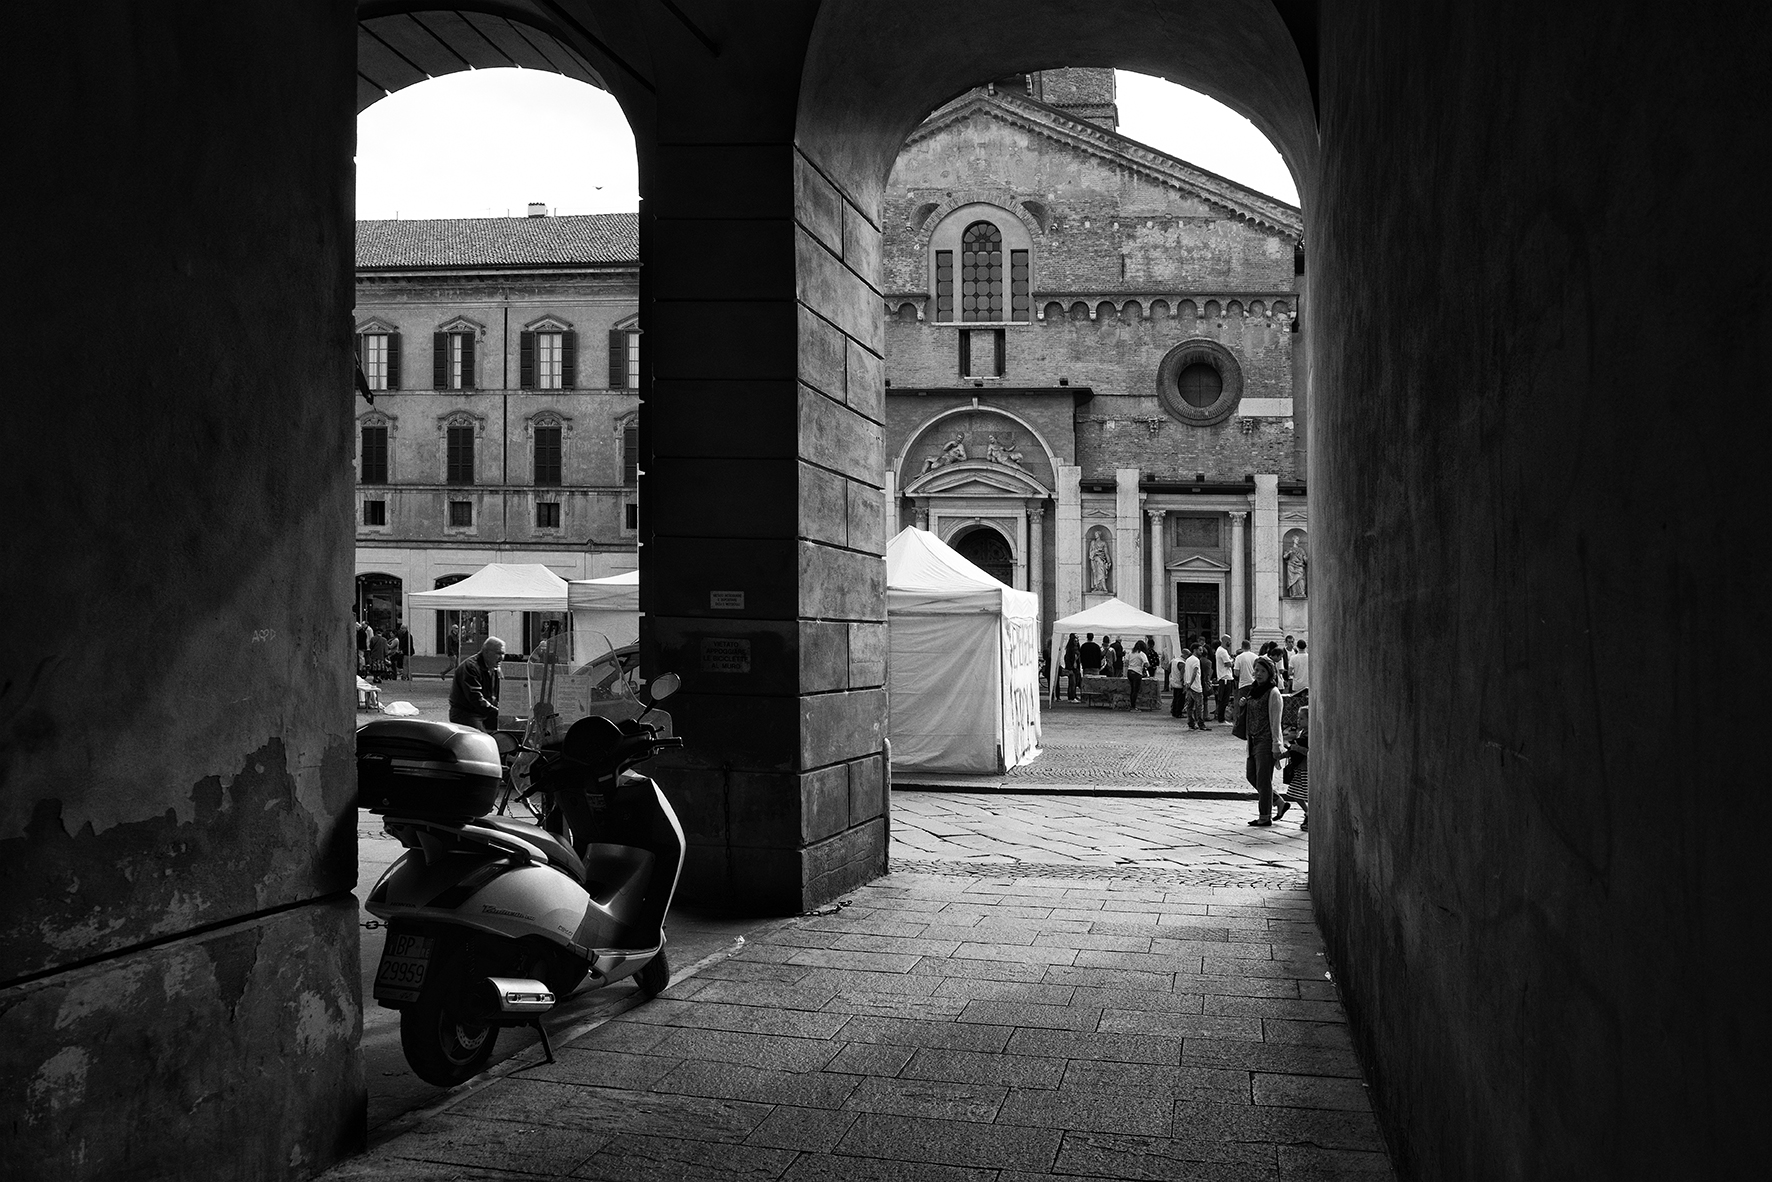 photo: https://upload.wikimedia.org/wikipedia/commons/c/cb/Duomo_di_Reggio_Emilia%2C_vista_frontale.jpg